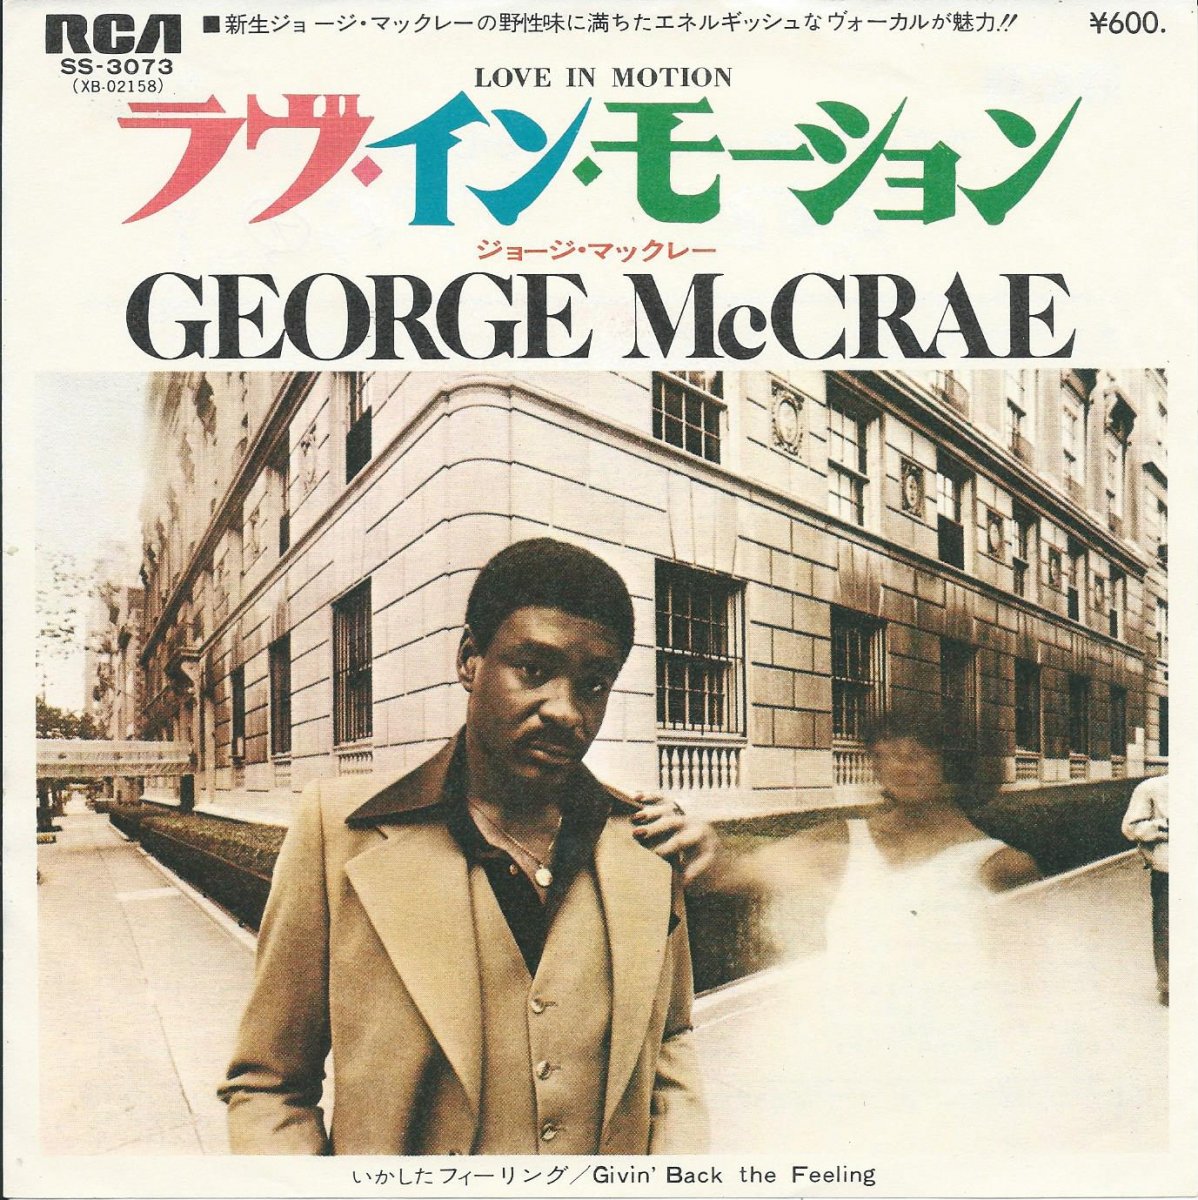 ジョージ・マックレー GEORGE McCRAE / ラヴ・イン・モーション LOVE IN MOTION (7